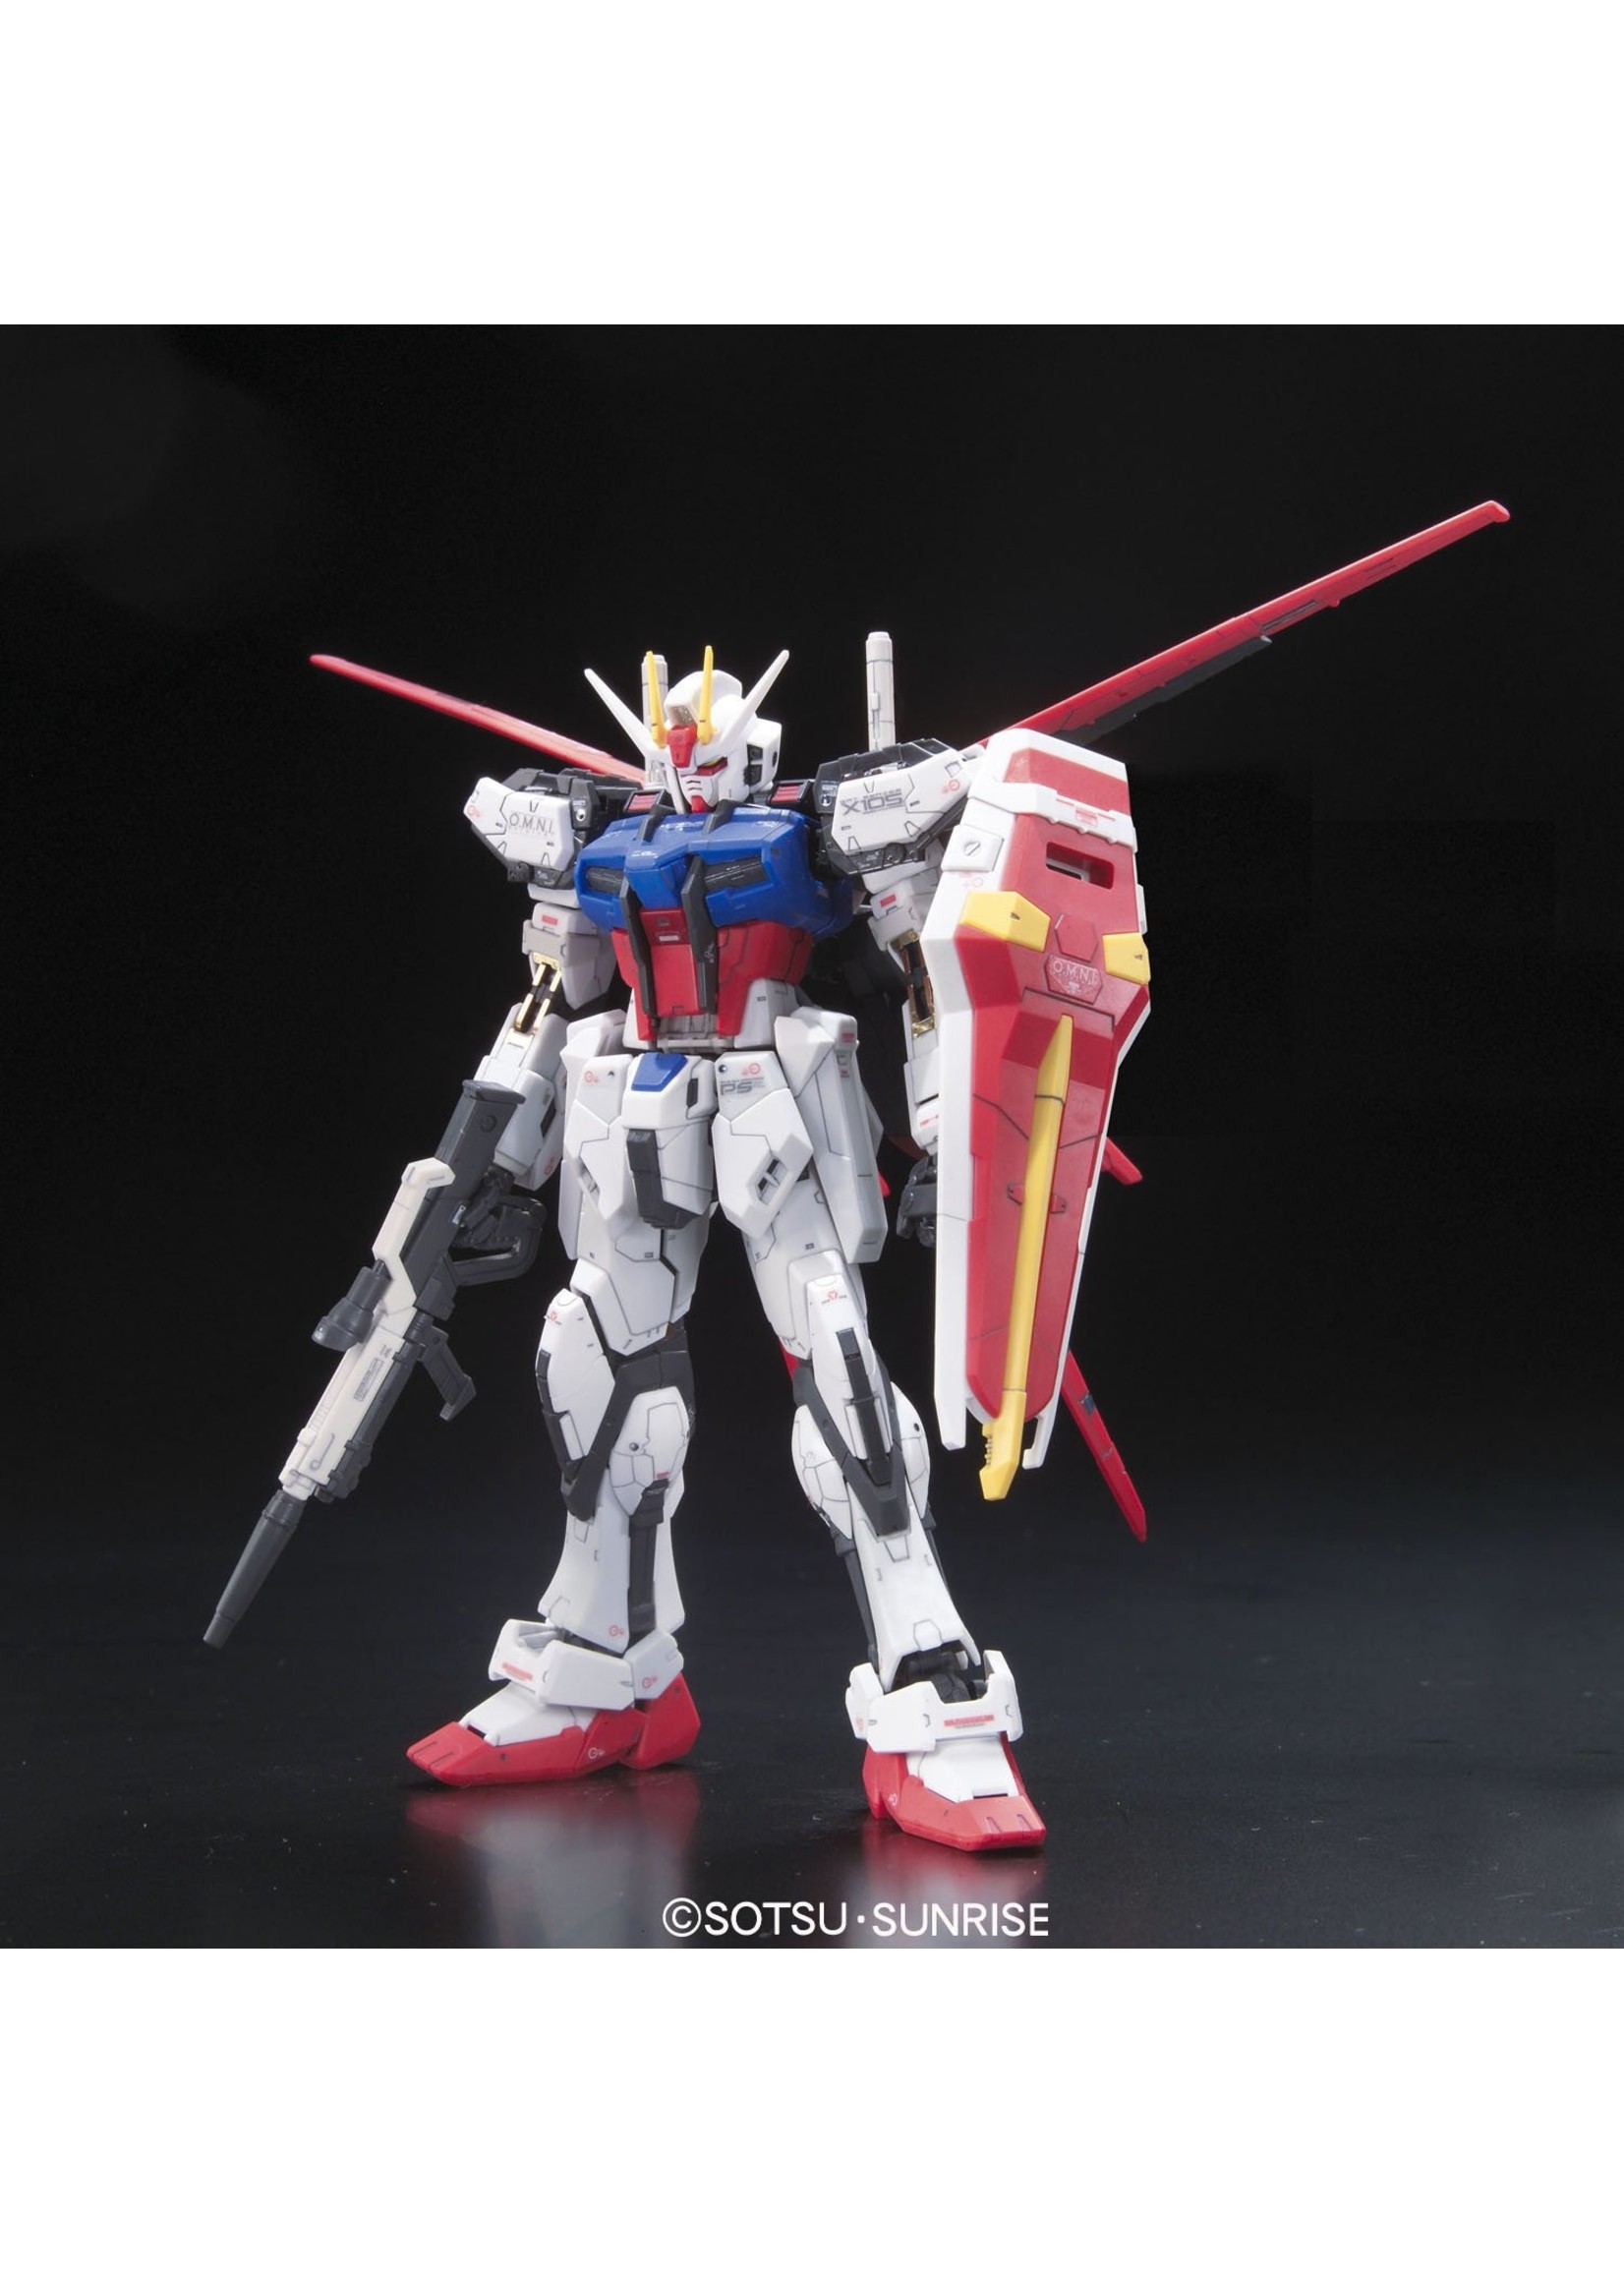 Bandai 169492 - #03 GAT-X105 Aile Strike Gundam Real Grade Model Kit - Hub  Hobby